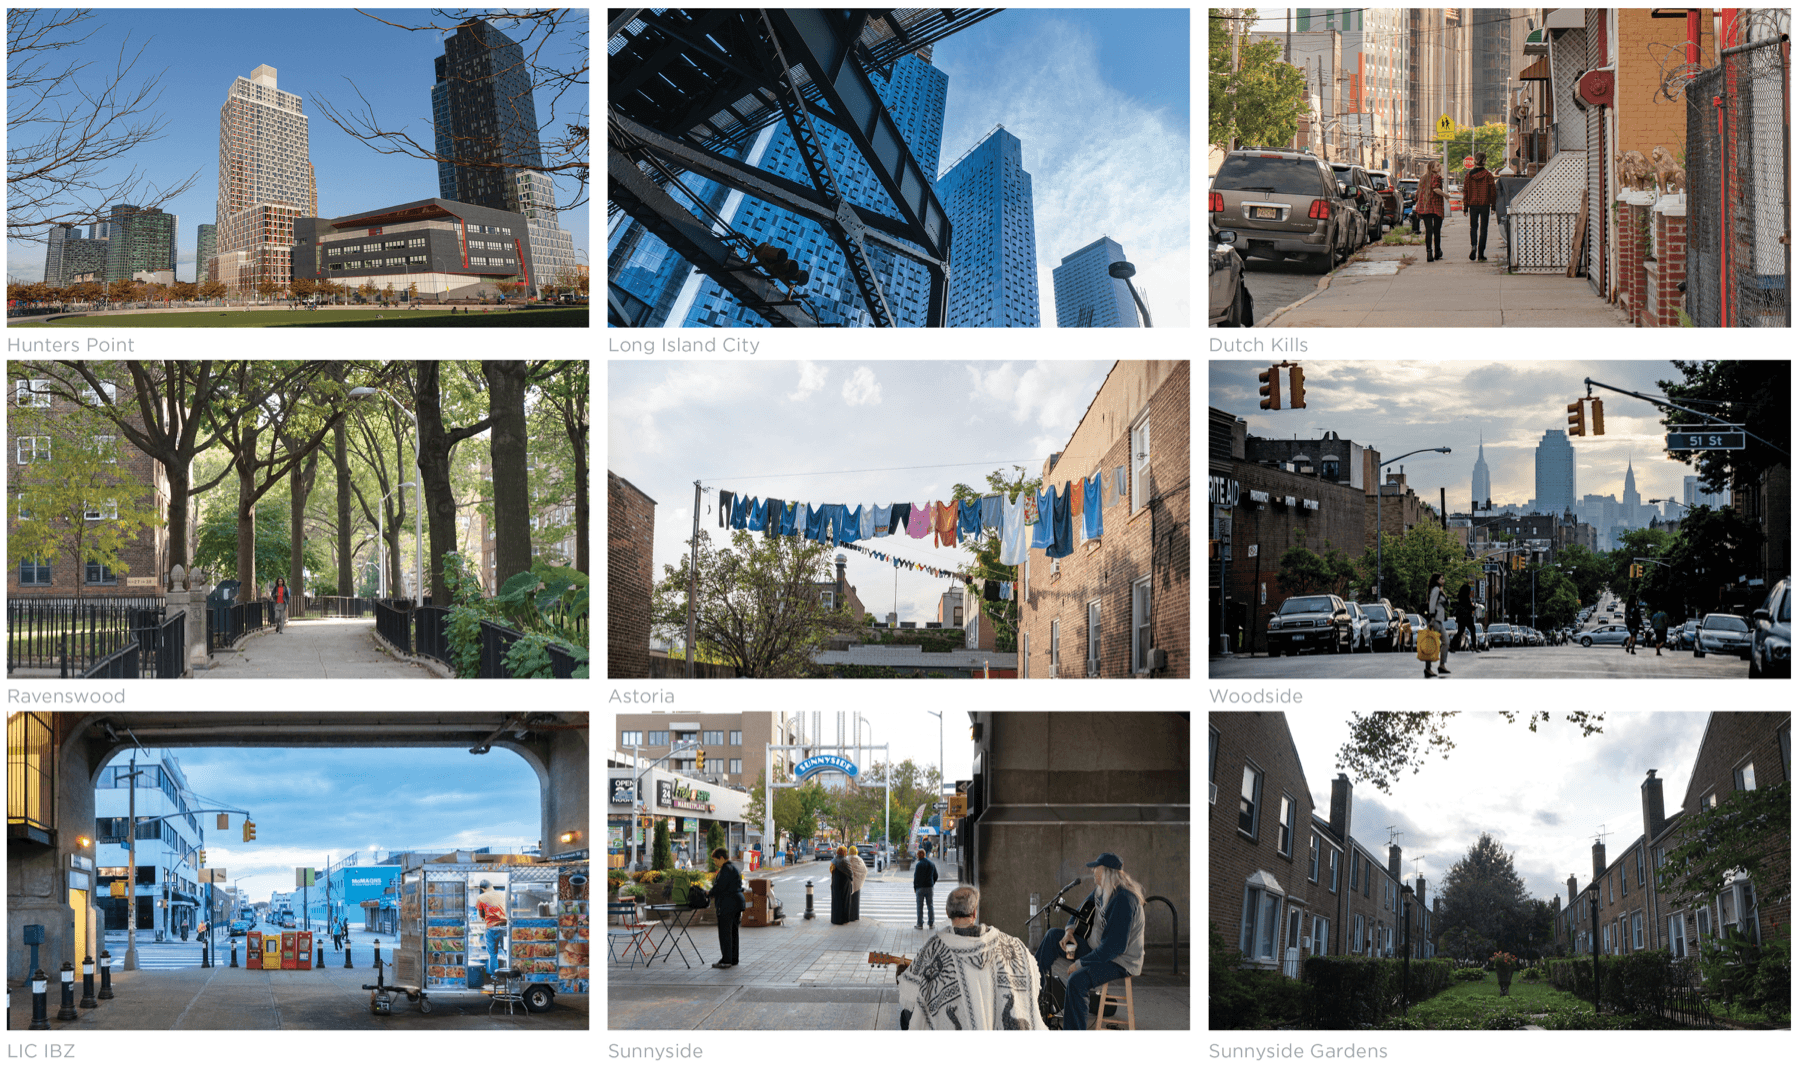 Images of 9 neighborhoods in Queens